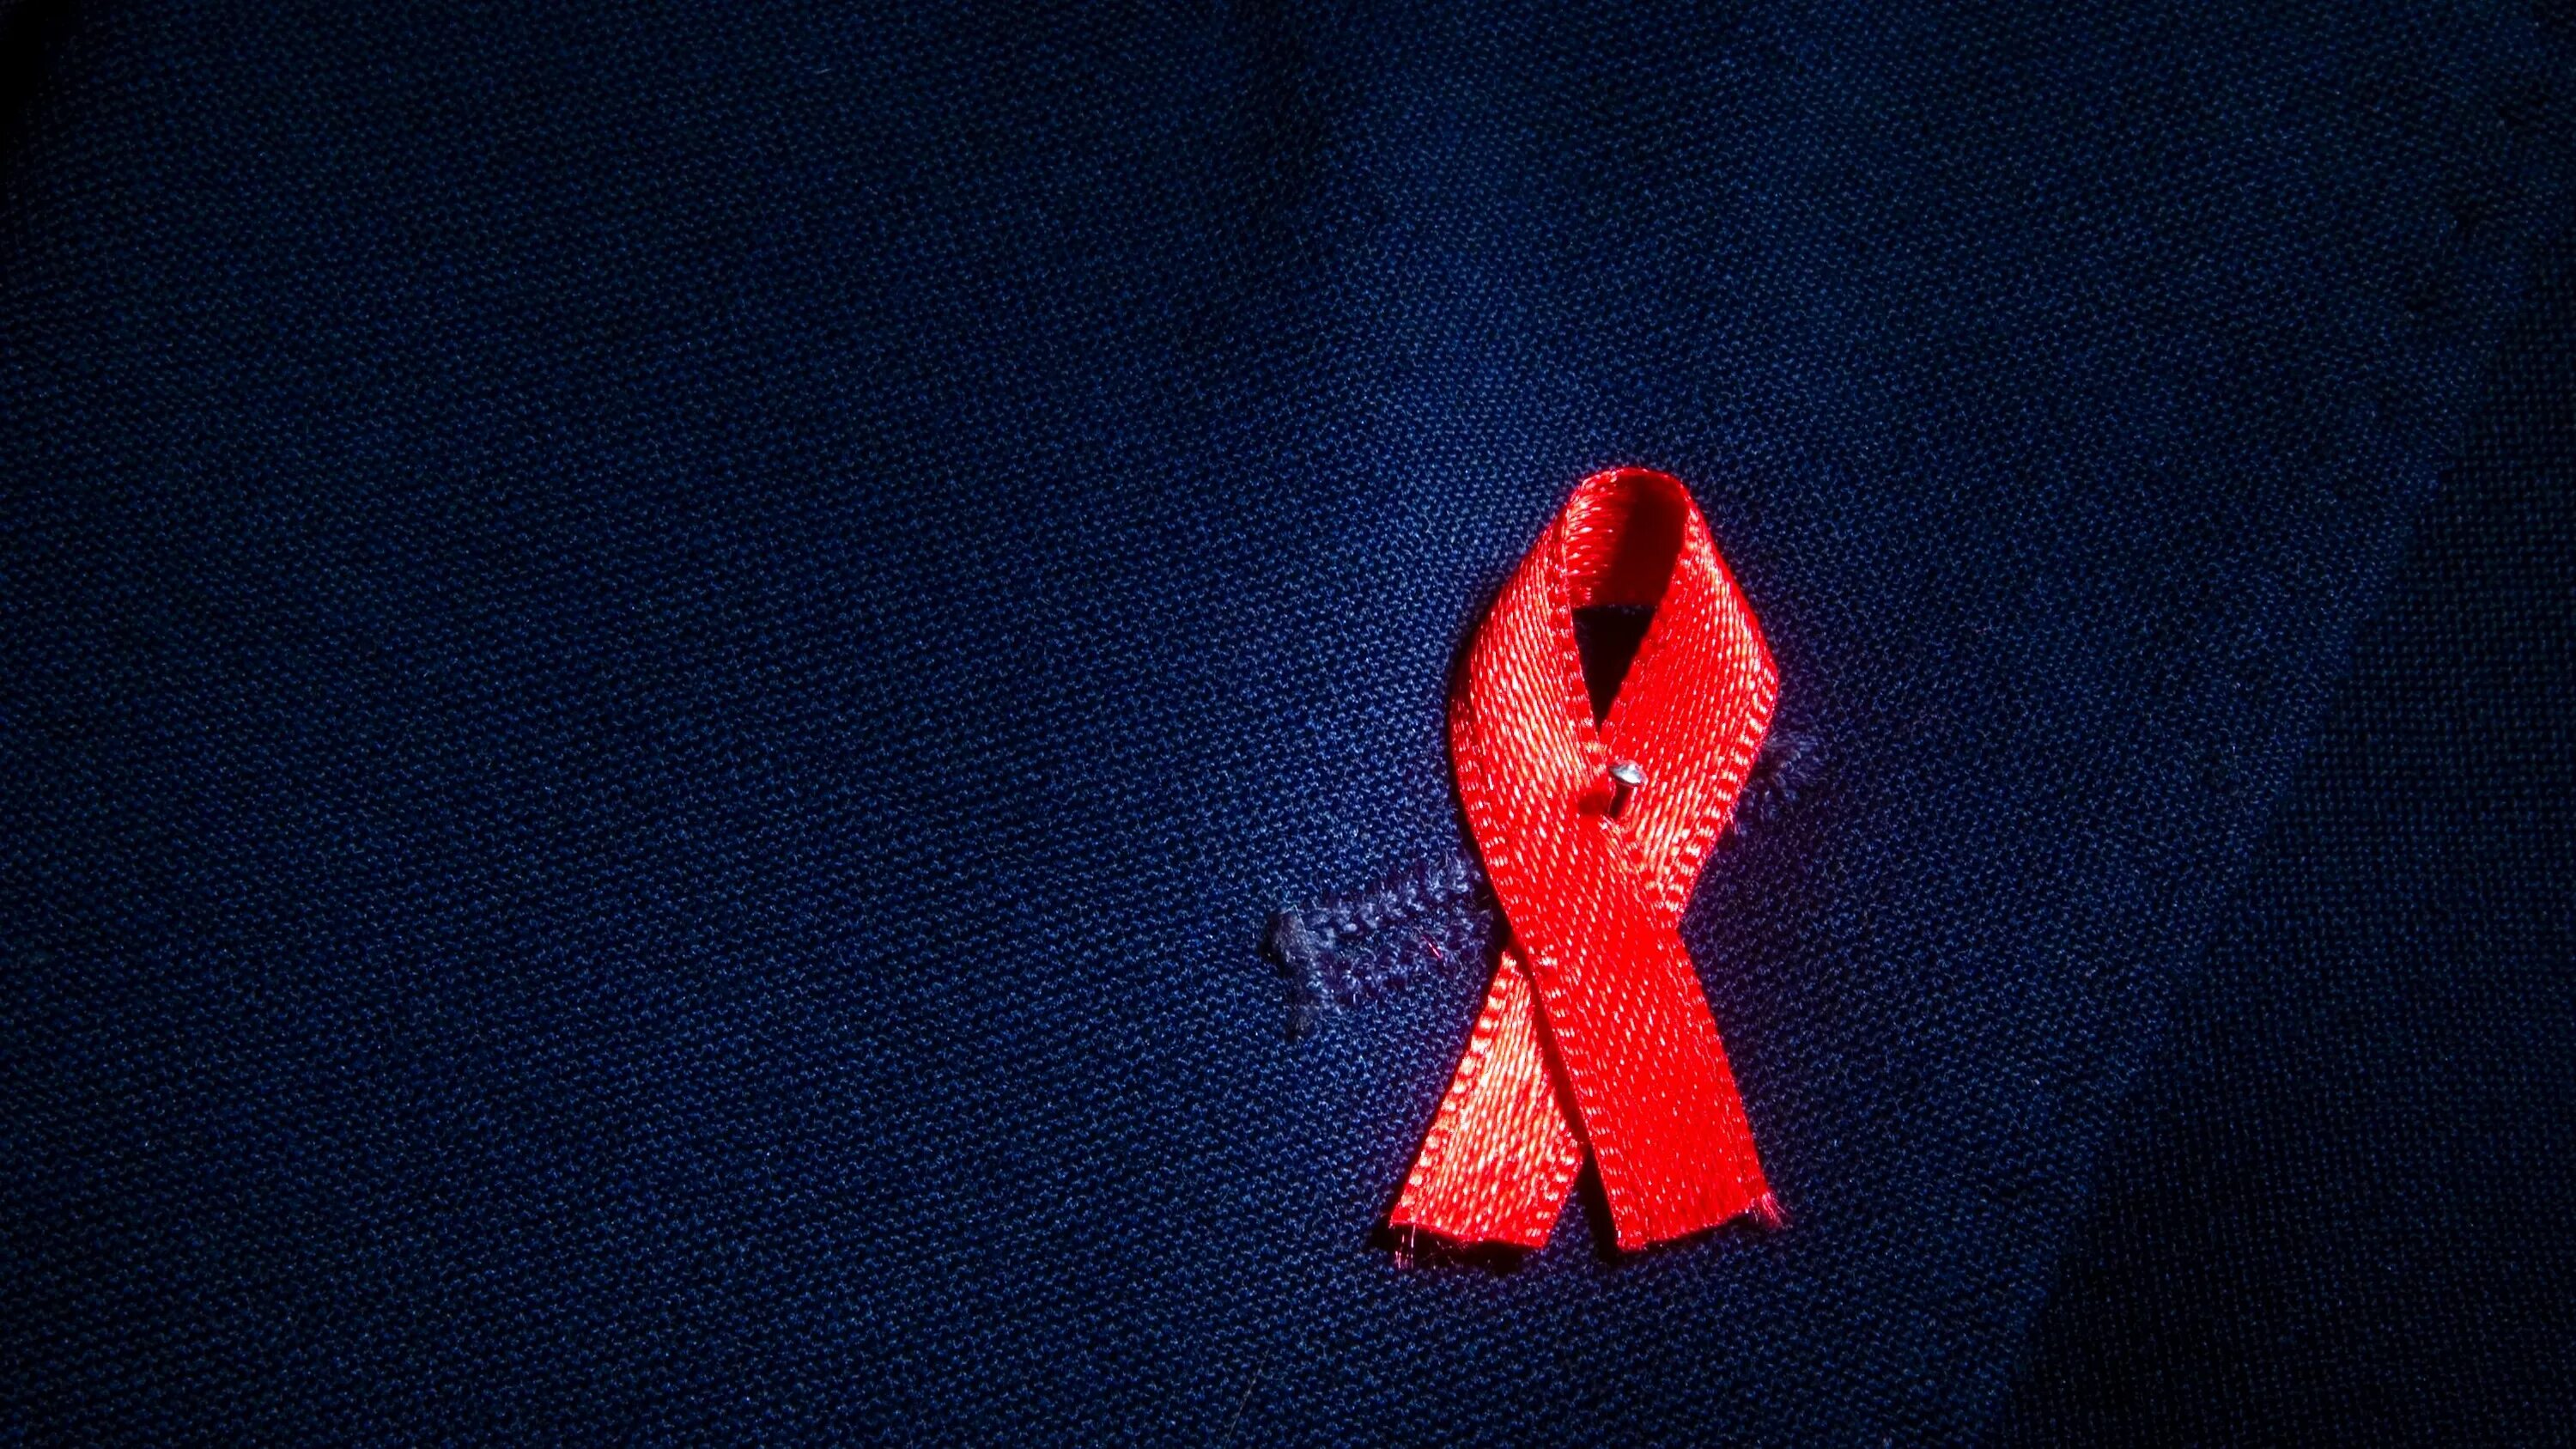 Фоны спид. ВИЧ фон для презентации. Фон для презентации СПИД ВИЧ. День памяти жертв СПИДА. Фон ВИЧ лента.